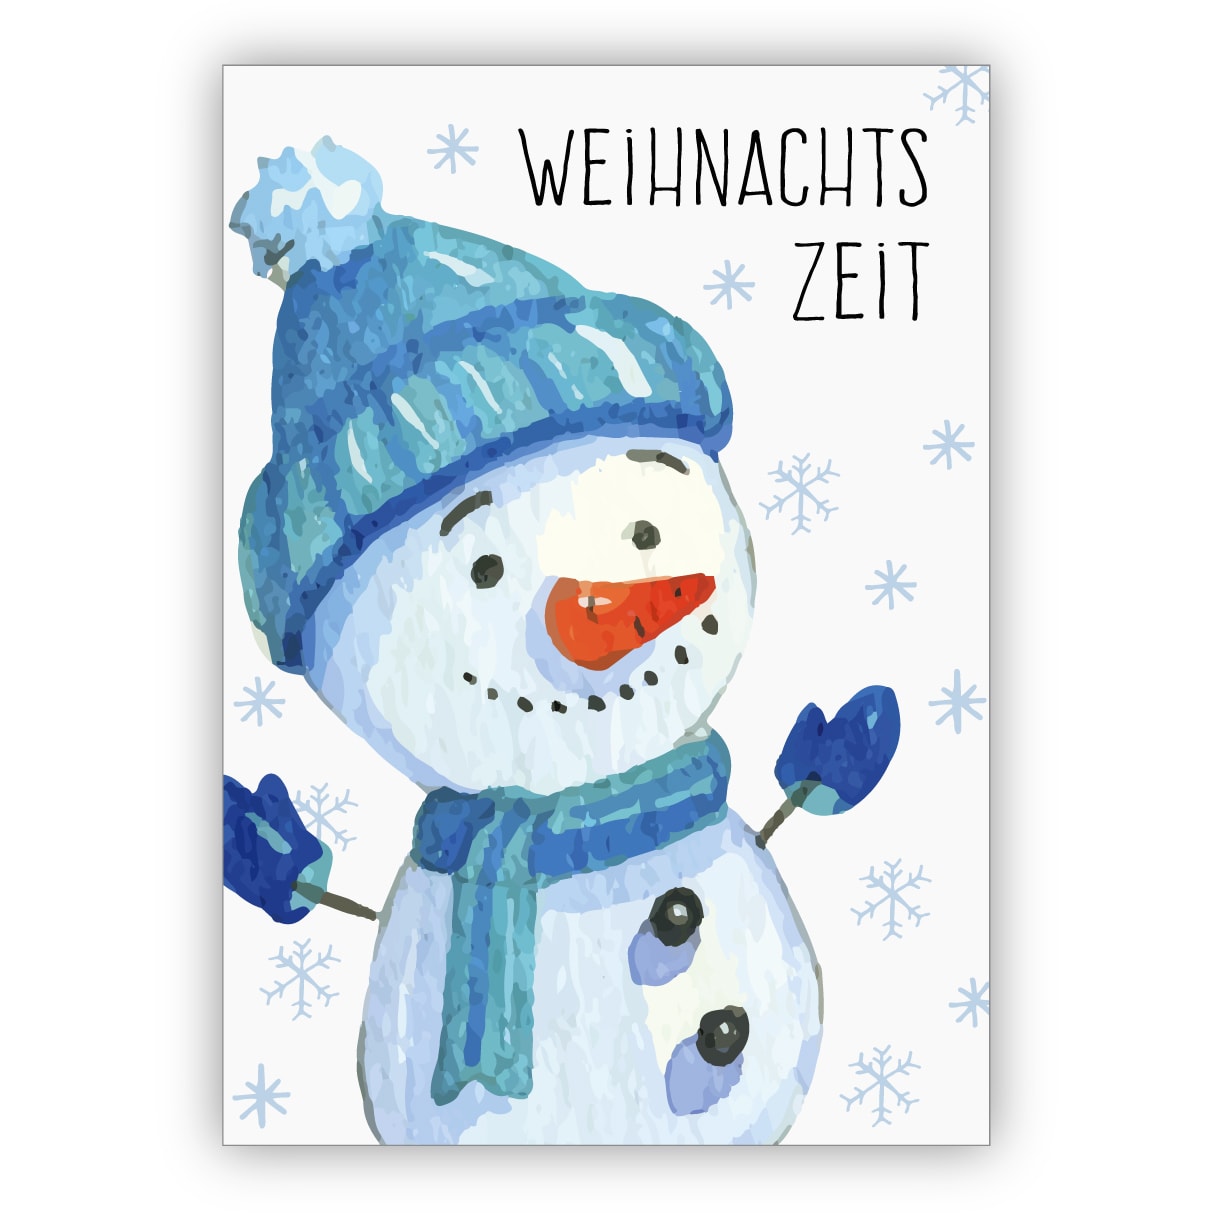 Fröhliche gemalte Winter Weihnachtskarte mit fröhlichem Schneemann: Weihnachts zeit